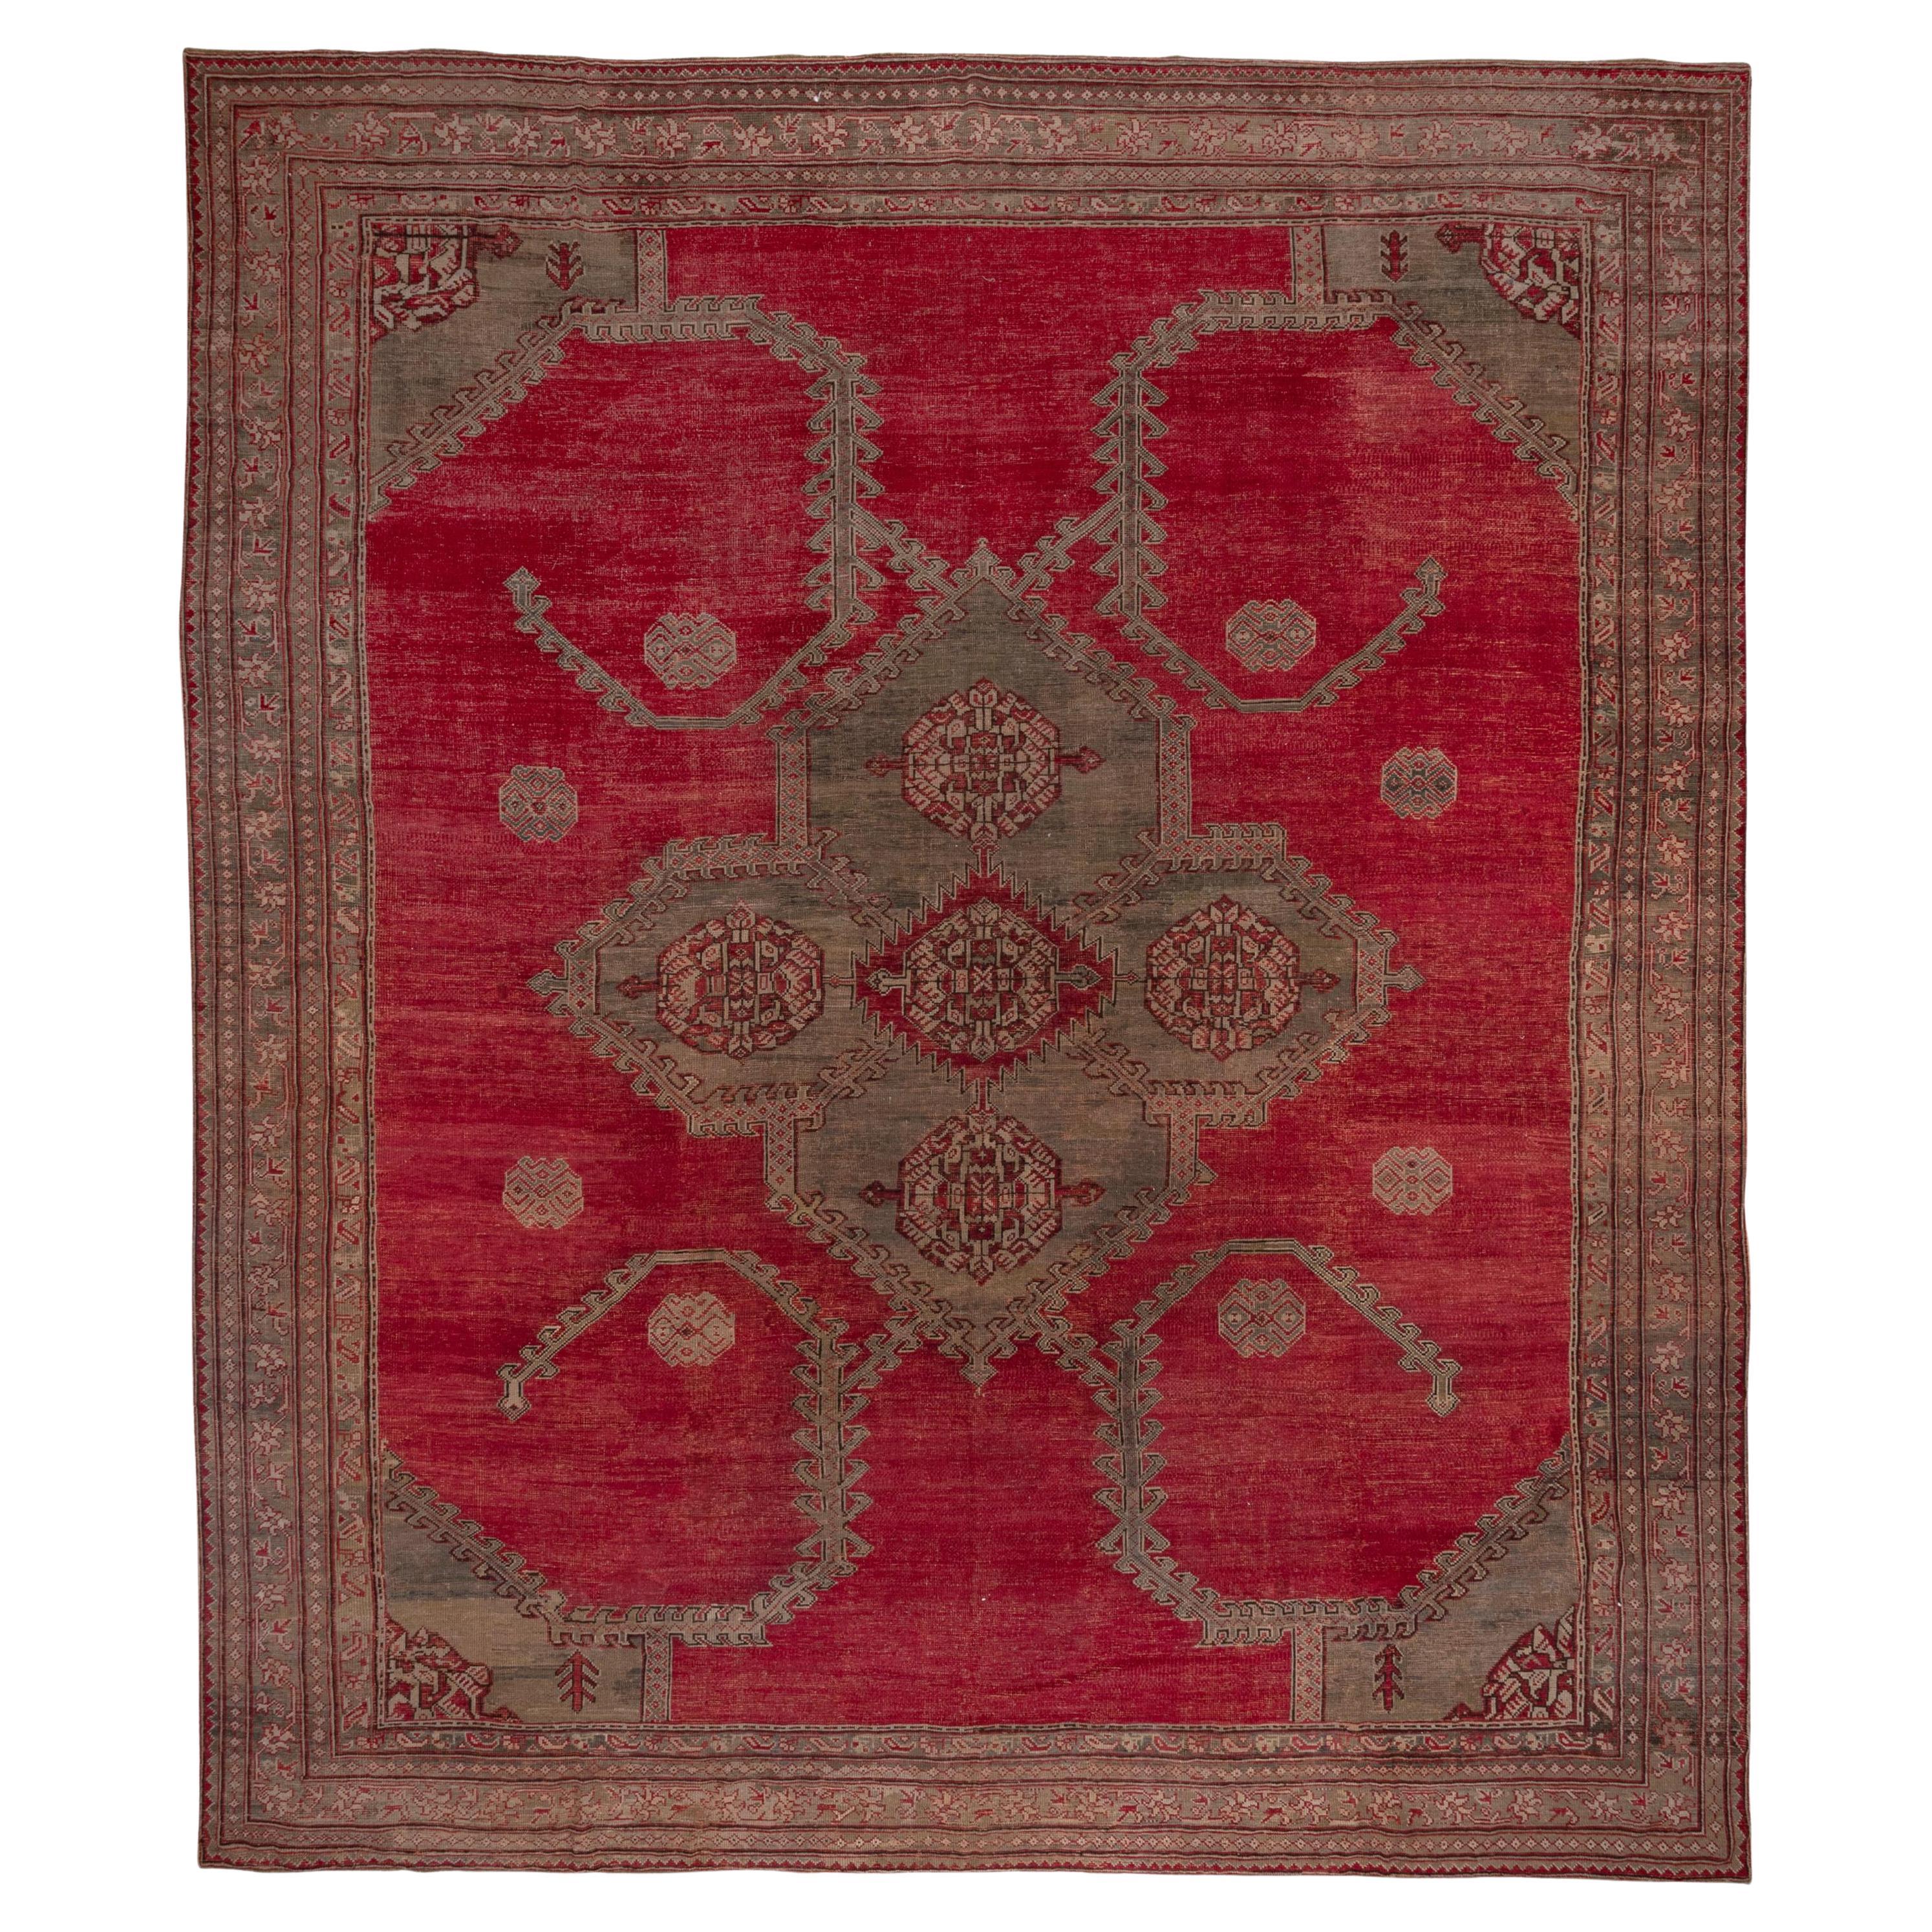 Magnifique tapis rouge ancien d'Oushak, vers 1900